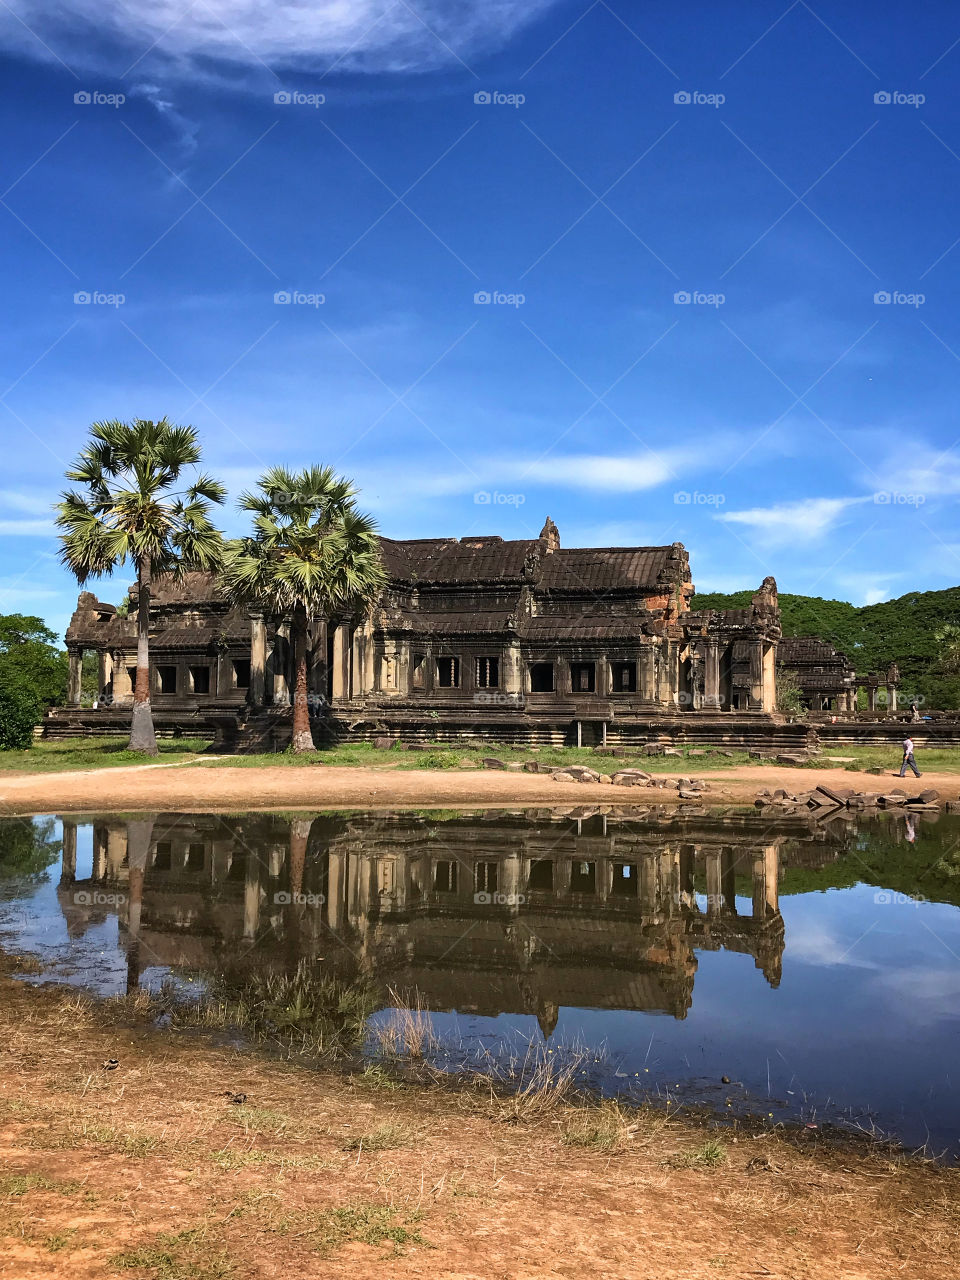 Reflection at Angkor Wat